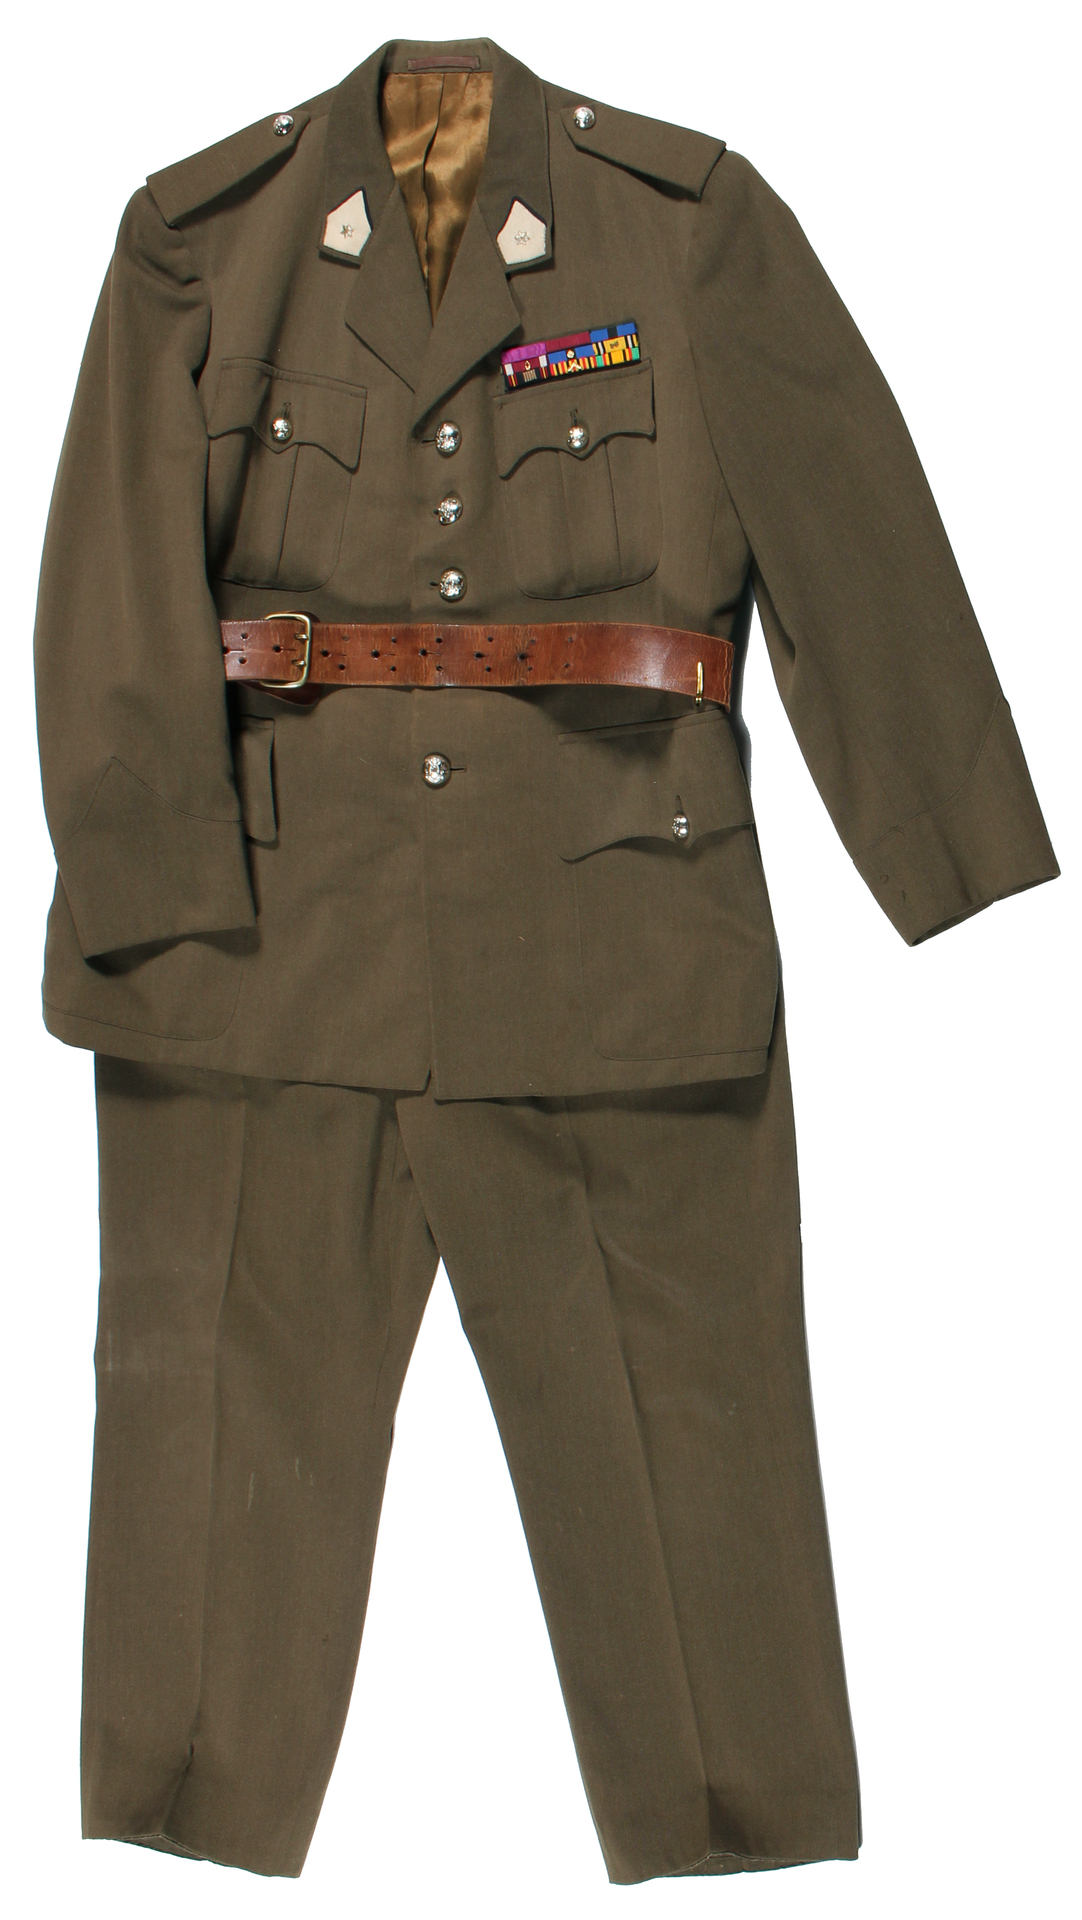 Bild 28_Uniform eines in Düren stationierten Adjudants (= höchster Rang bei den Unteroffizieren)_1970er_Sammlung SMD.jpg